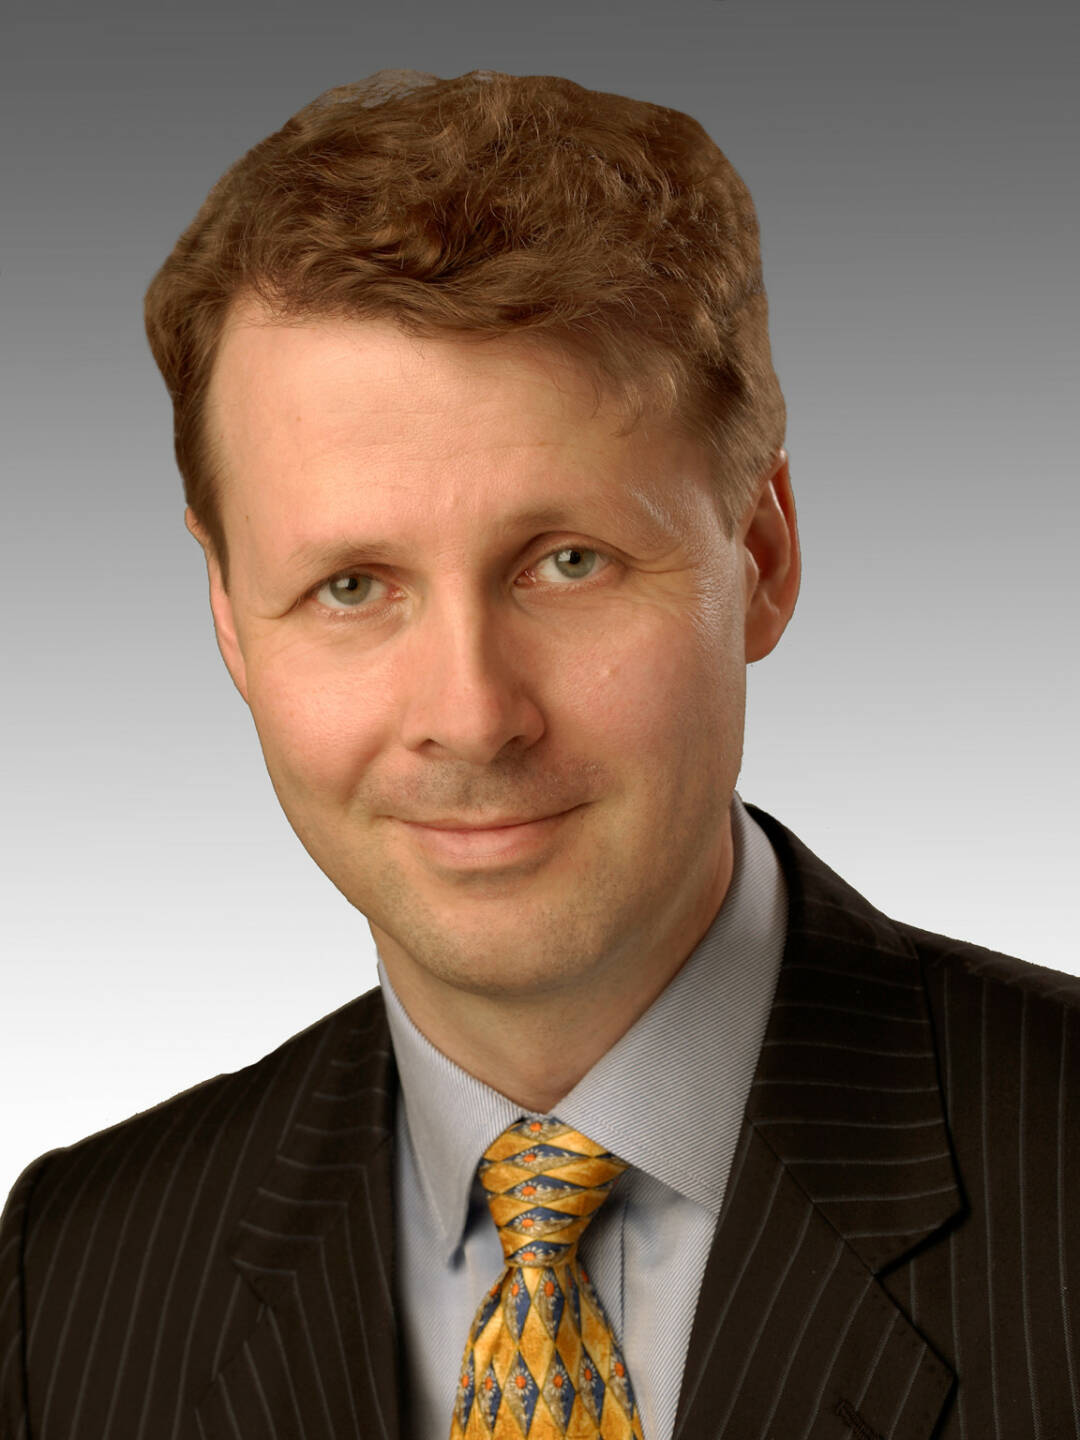 Risto Siilasmaa, Chairman, Nokia